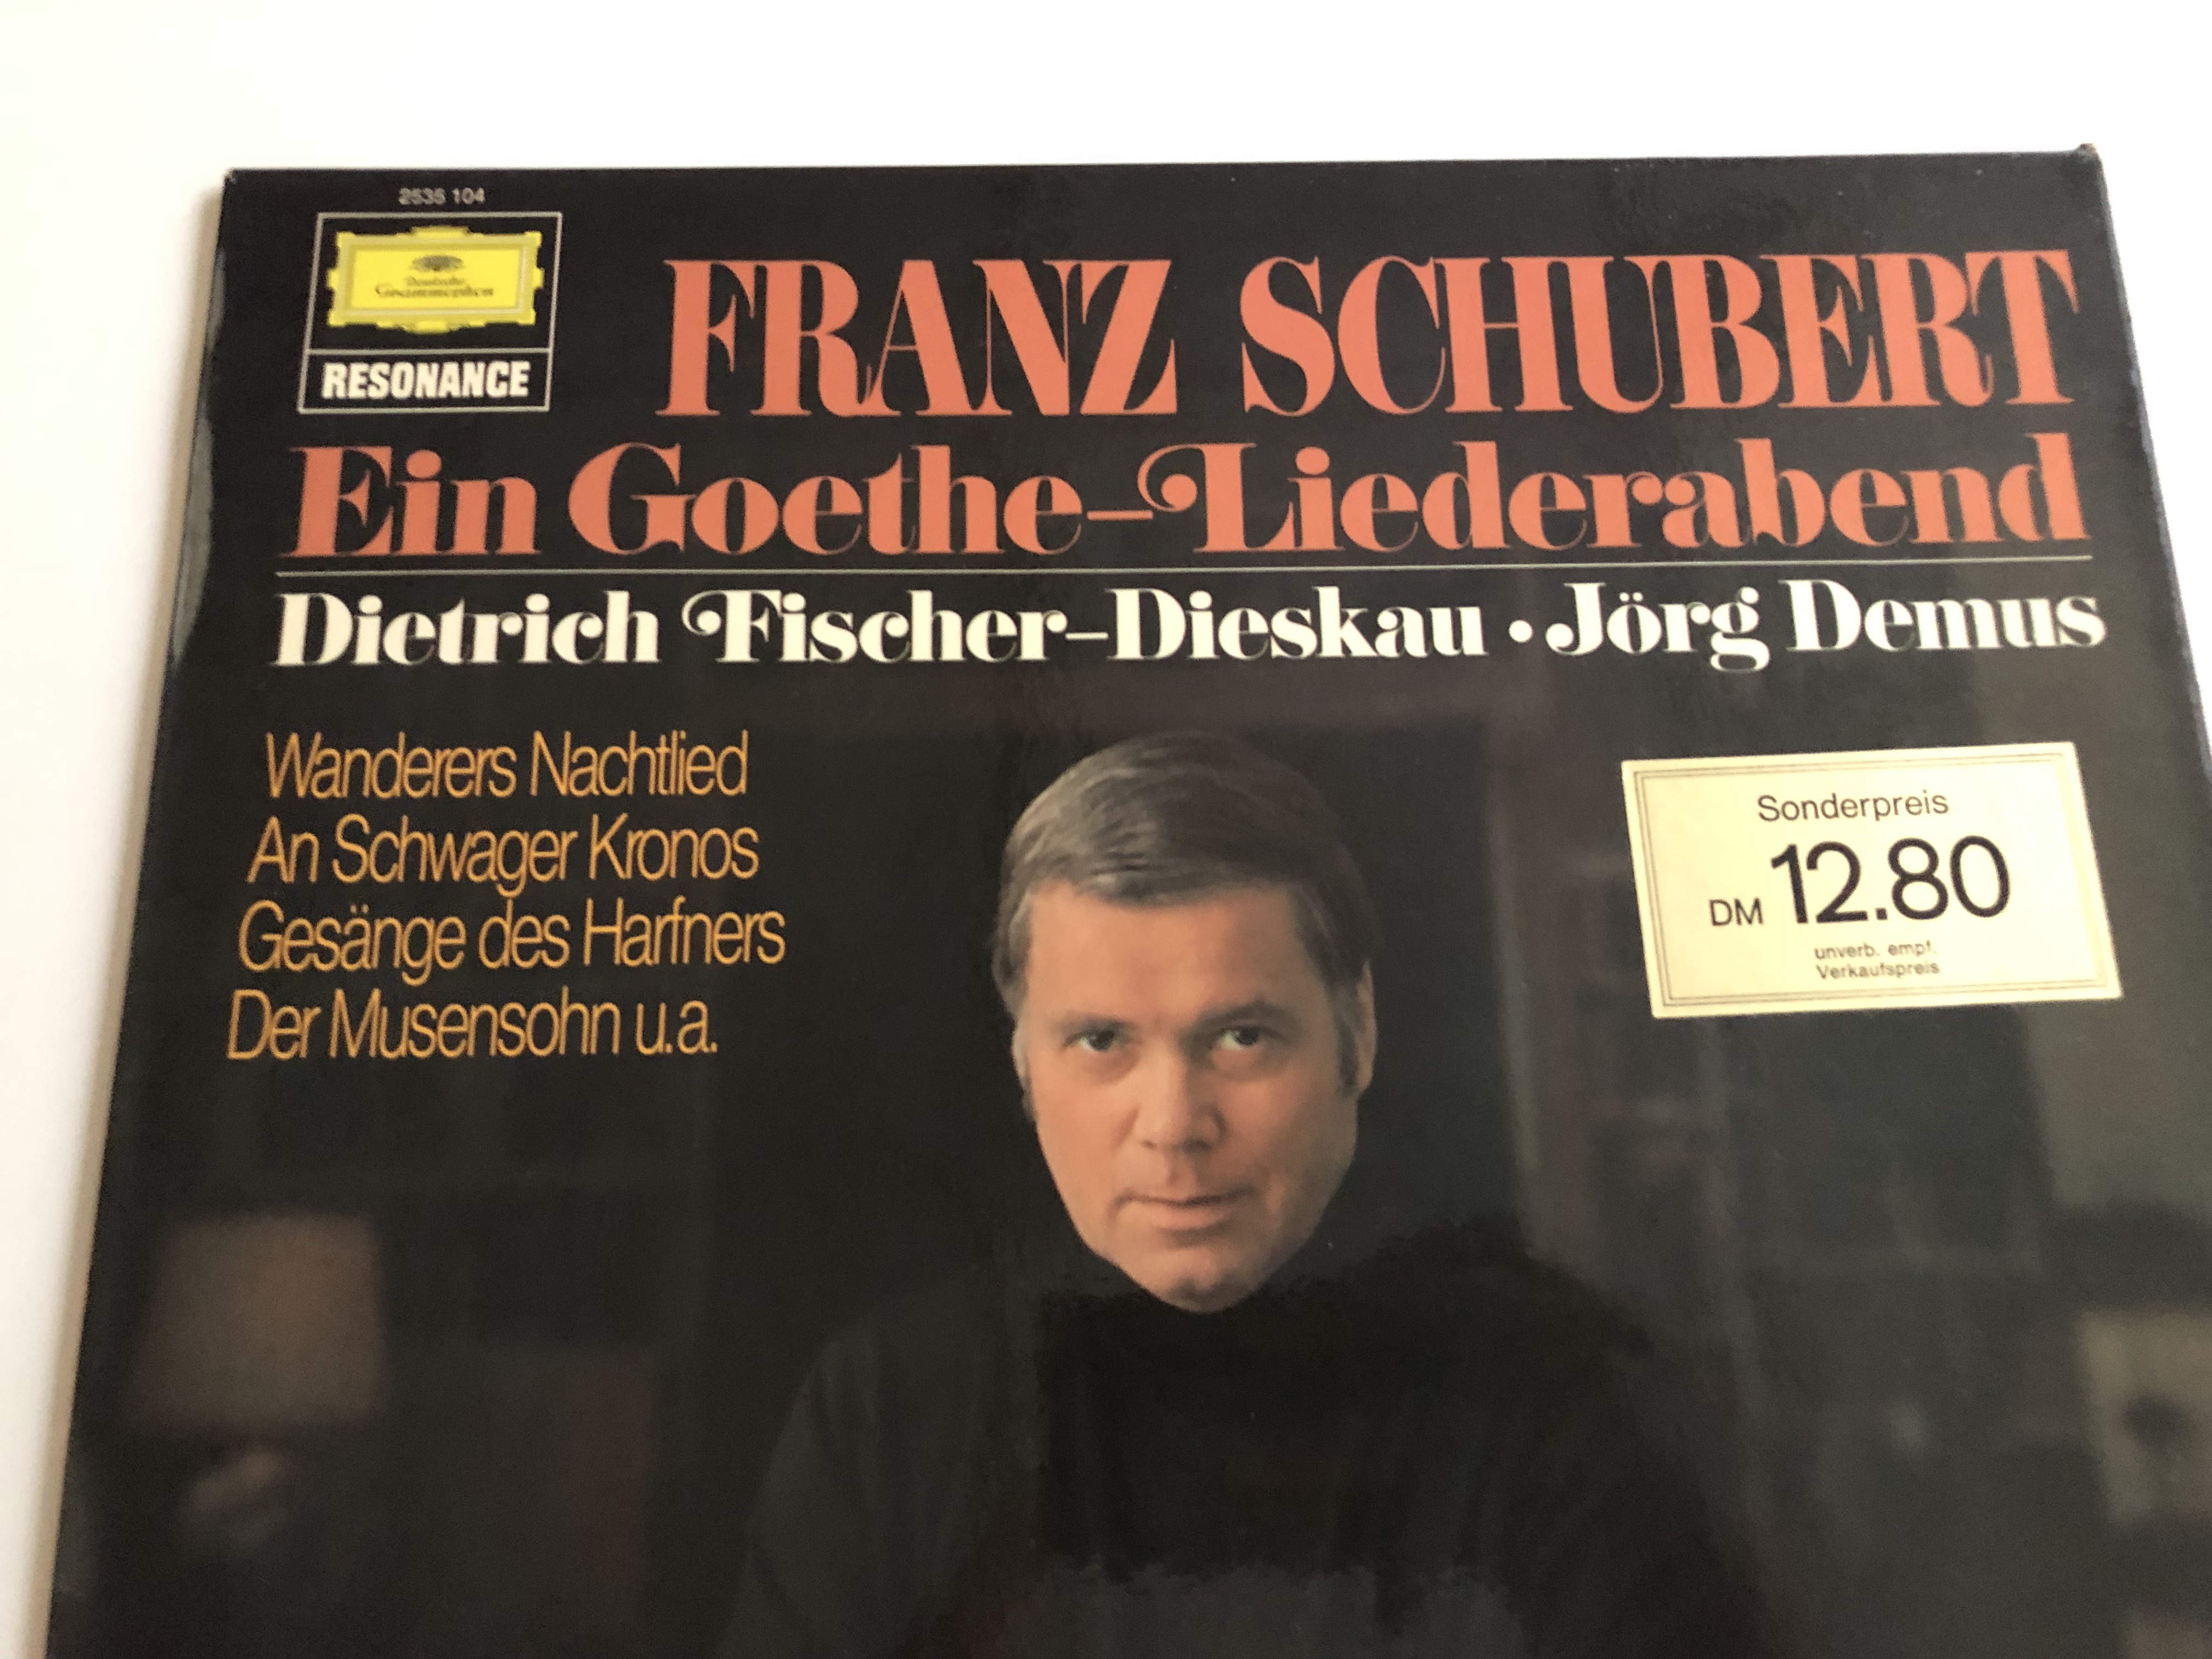 franz-schubert-ein-goethe-liederabend-dietrich-fischer-dieskau-j-rg-demus-deutsche-grammophon-lp-stereo-2535-104-2-.jpg